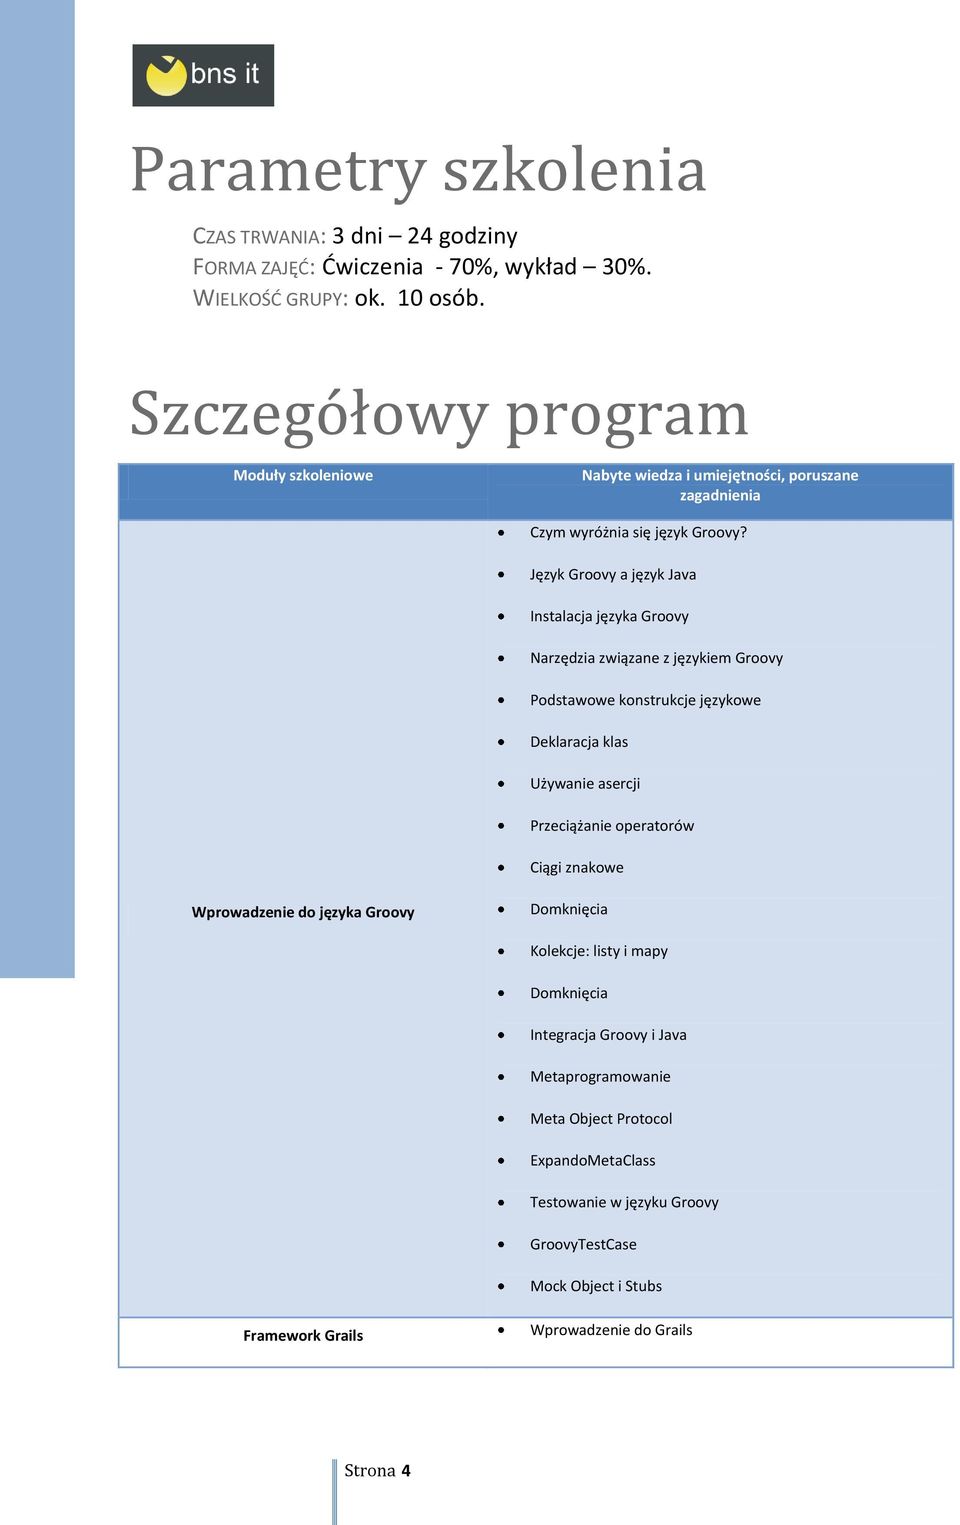 Język Groovy a język Java Instalacja języka Groovy Narzędzia związane z językiem Groovy Podstawowe konstrukcje językowe Deklaracja klas Używanie asercji Przeciążanie